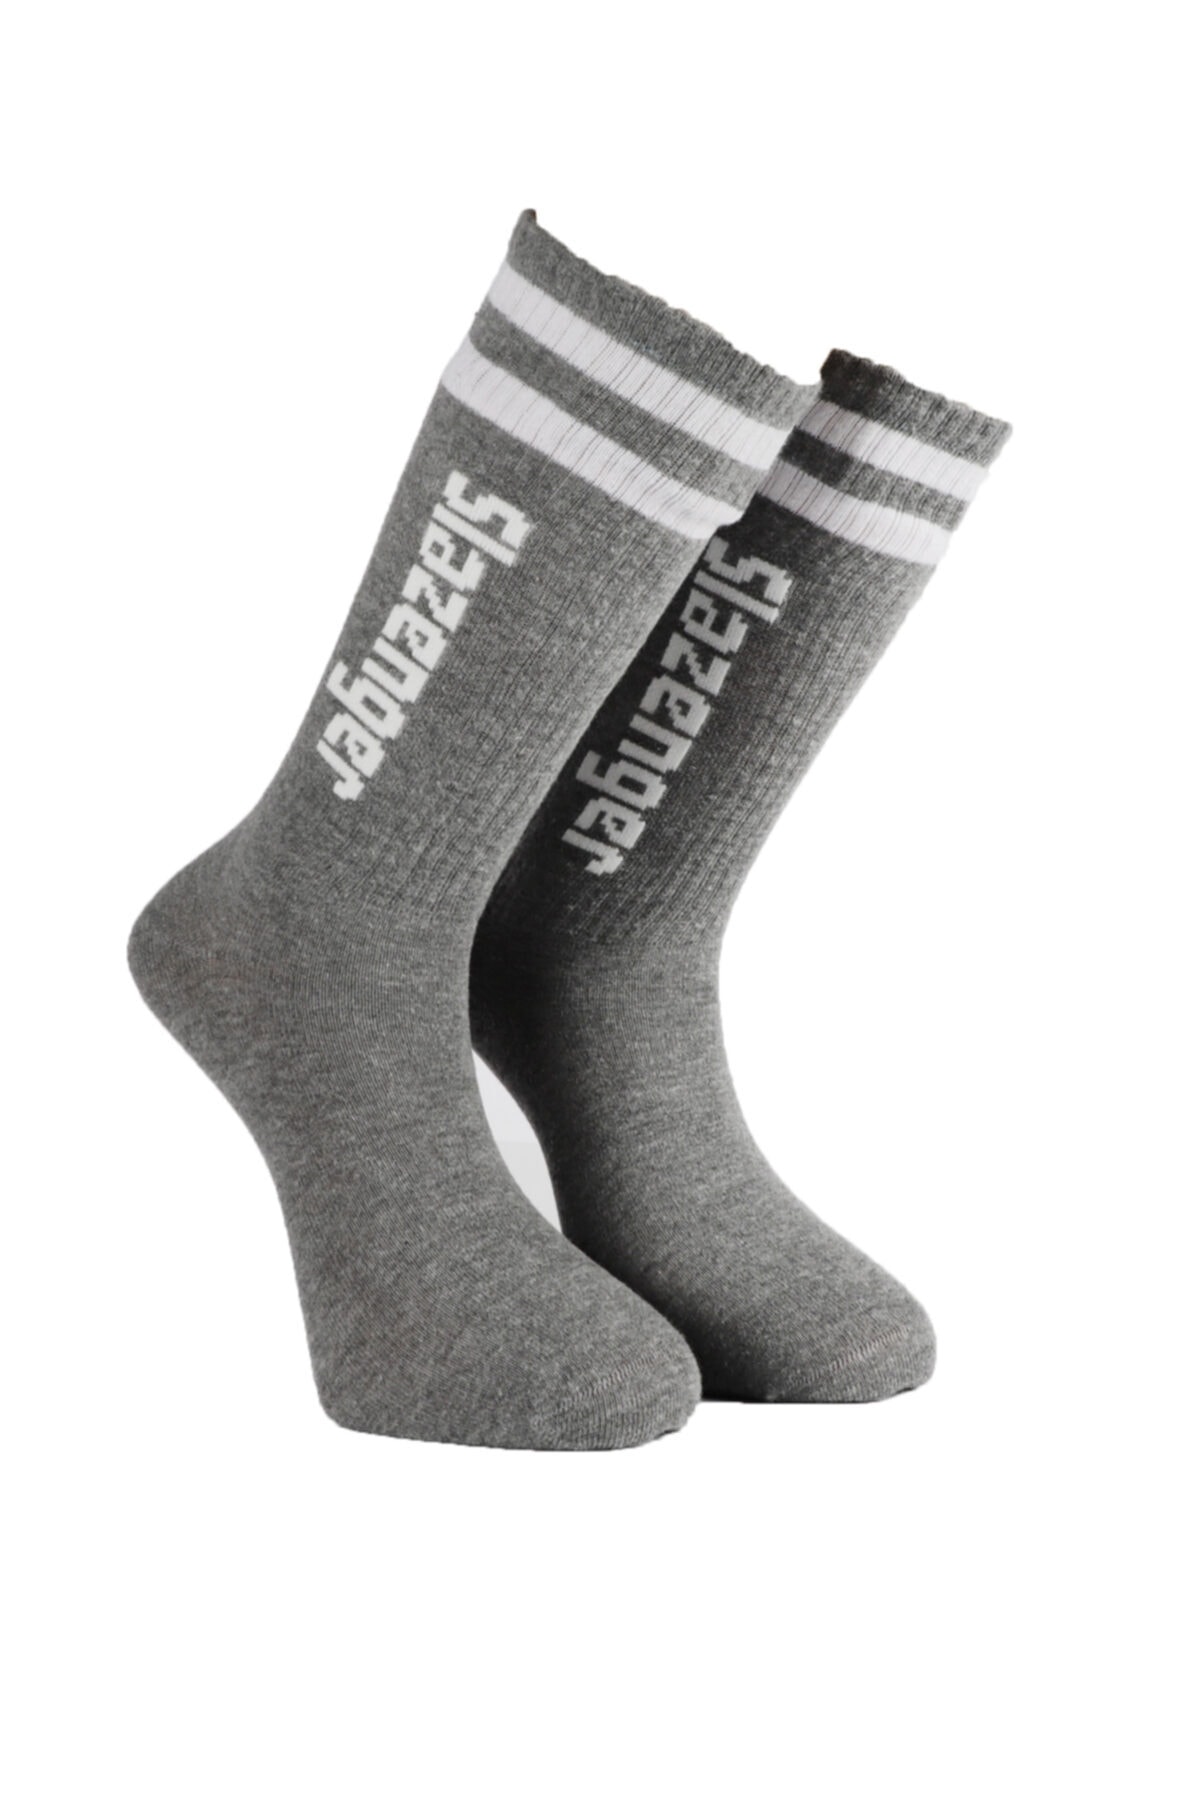 Slazenger Jinn Men's Socks Gray